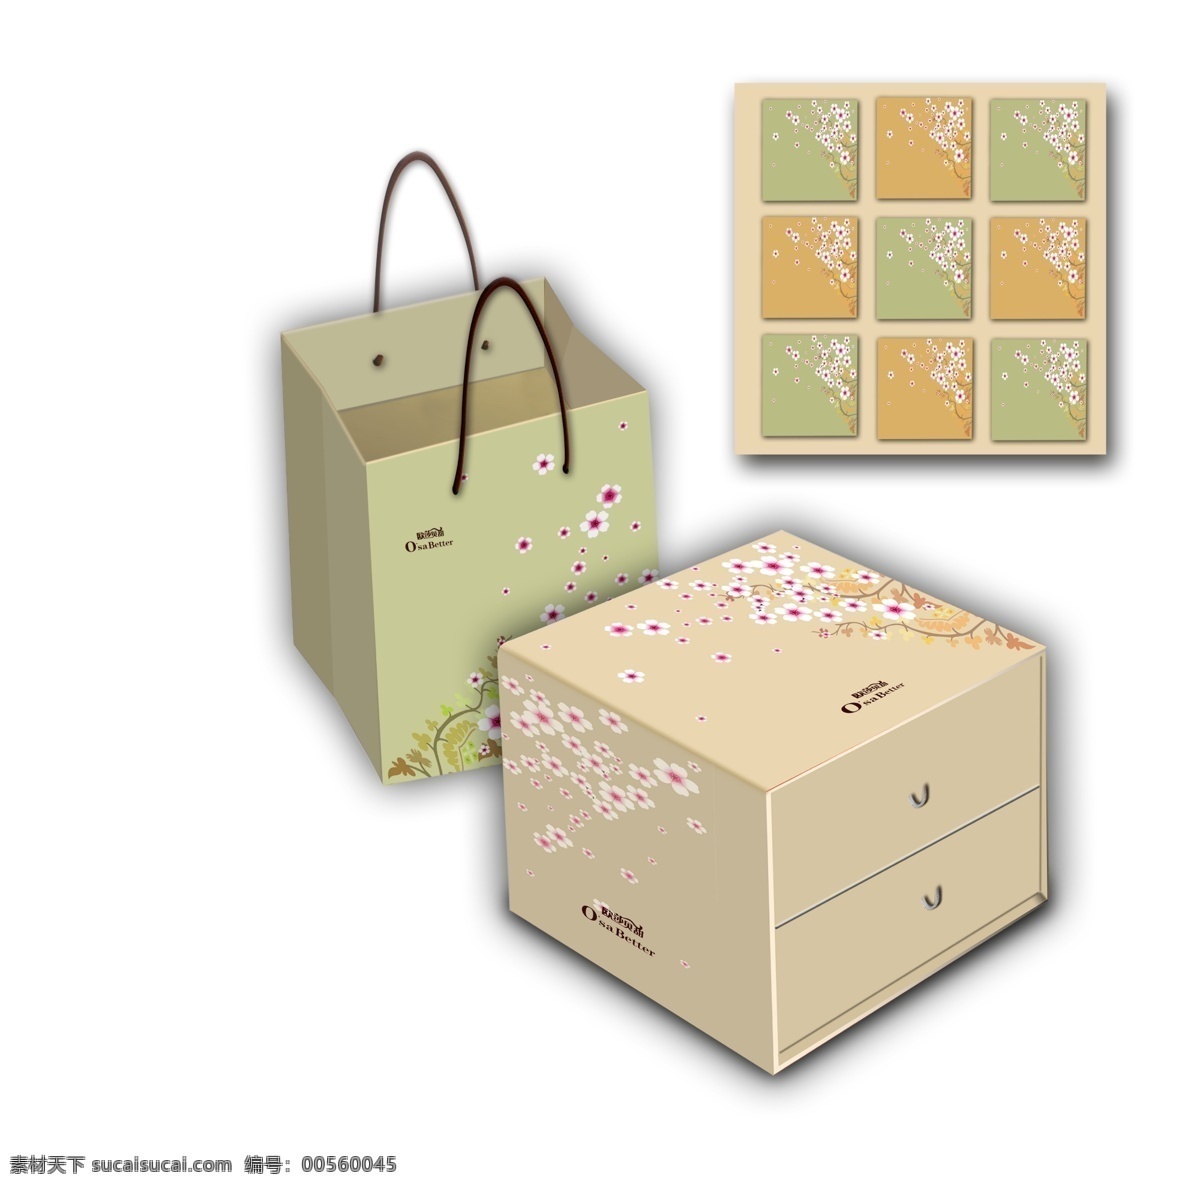 月饼礼盒合起 月饼 礼盒 包装 小花 简洁 大方 包装设计 广告设计模板 源文件